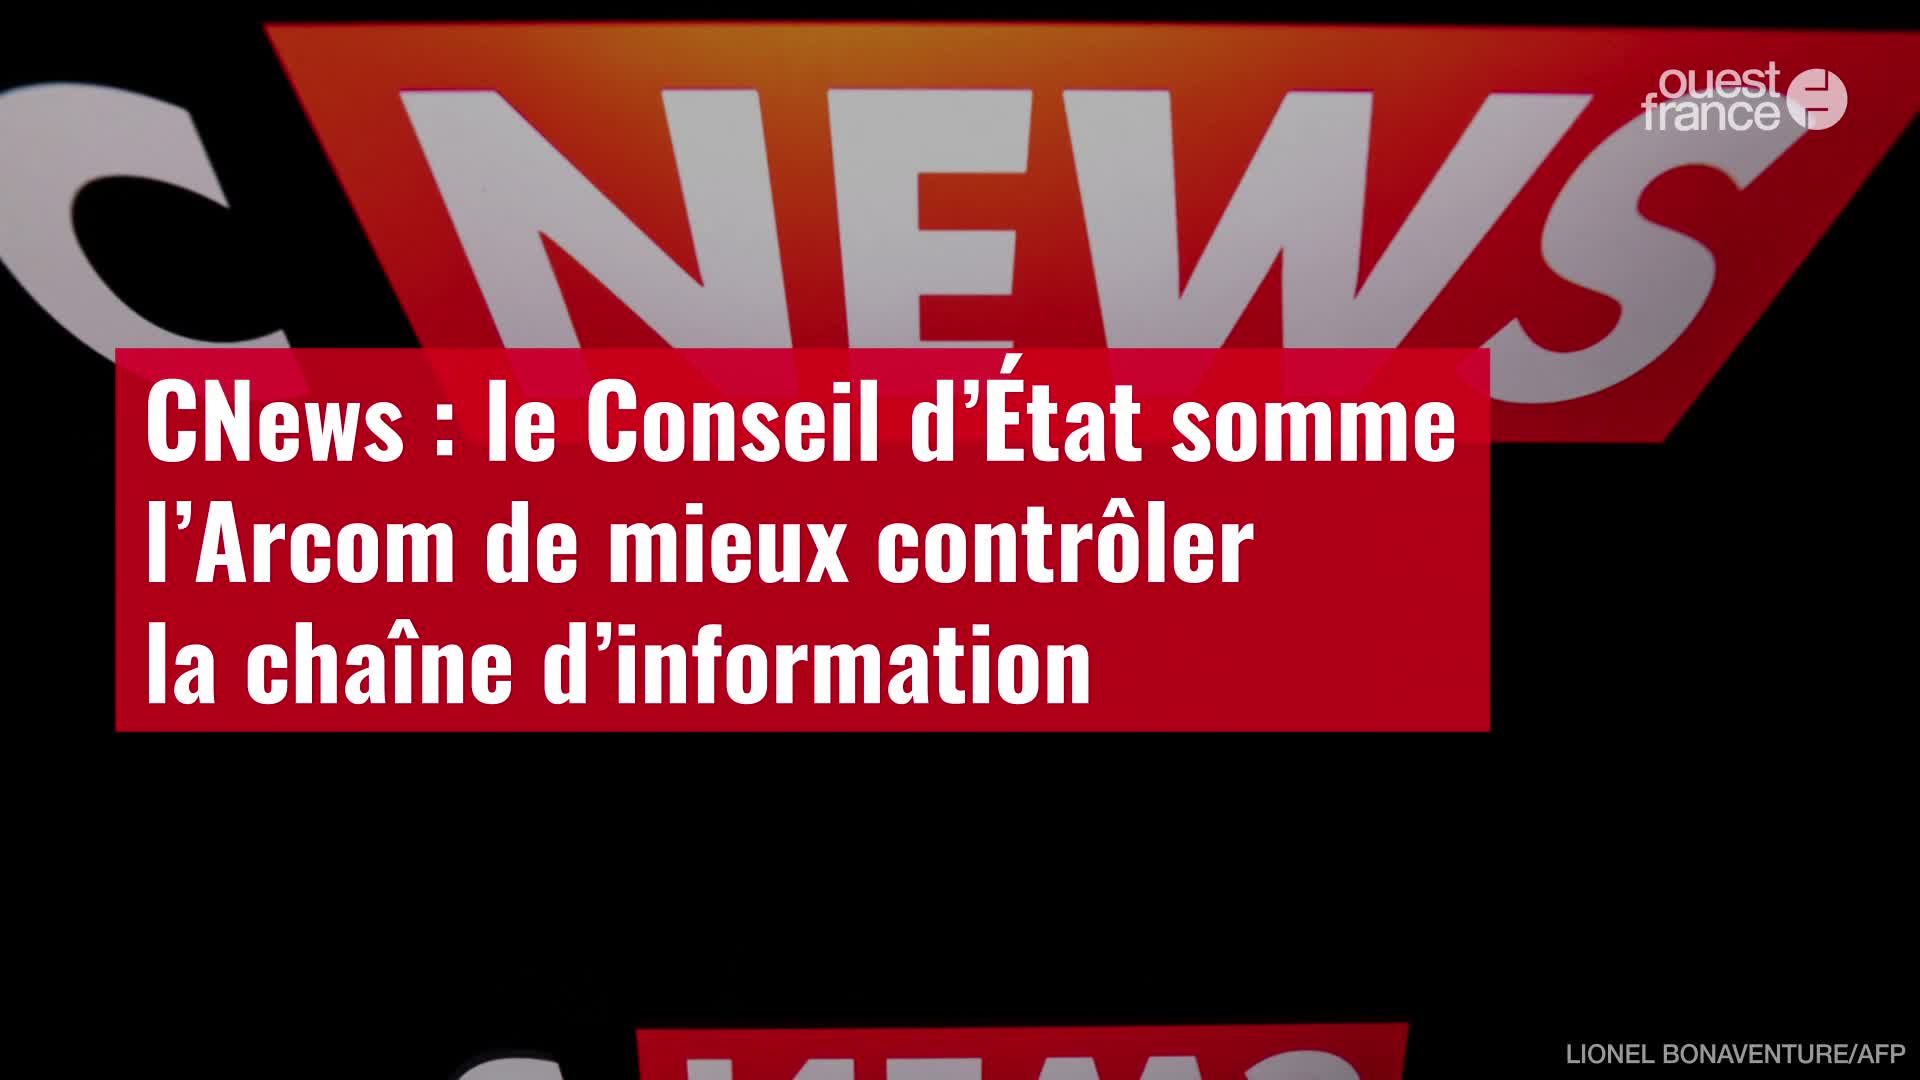 CNews "n'est plus une chaîne d'information, mais est devenue un média  d'opinion", pourquoi le Conseil d'État somme l'Arcom de recadrer la chaîne  - ladepeche.fr